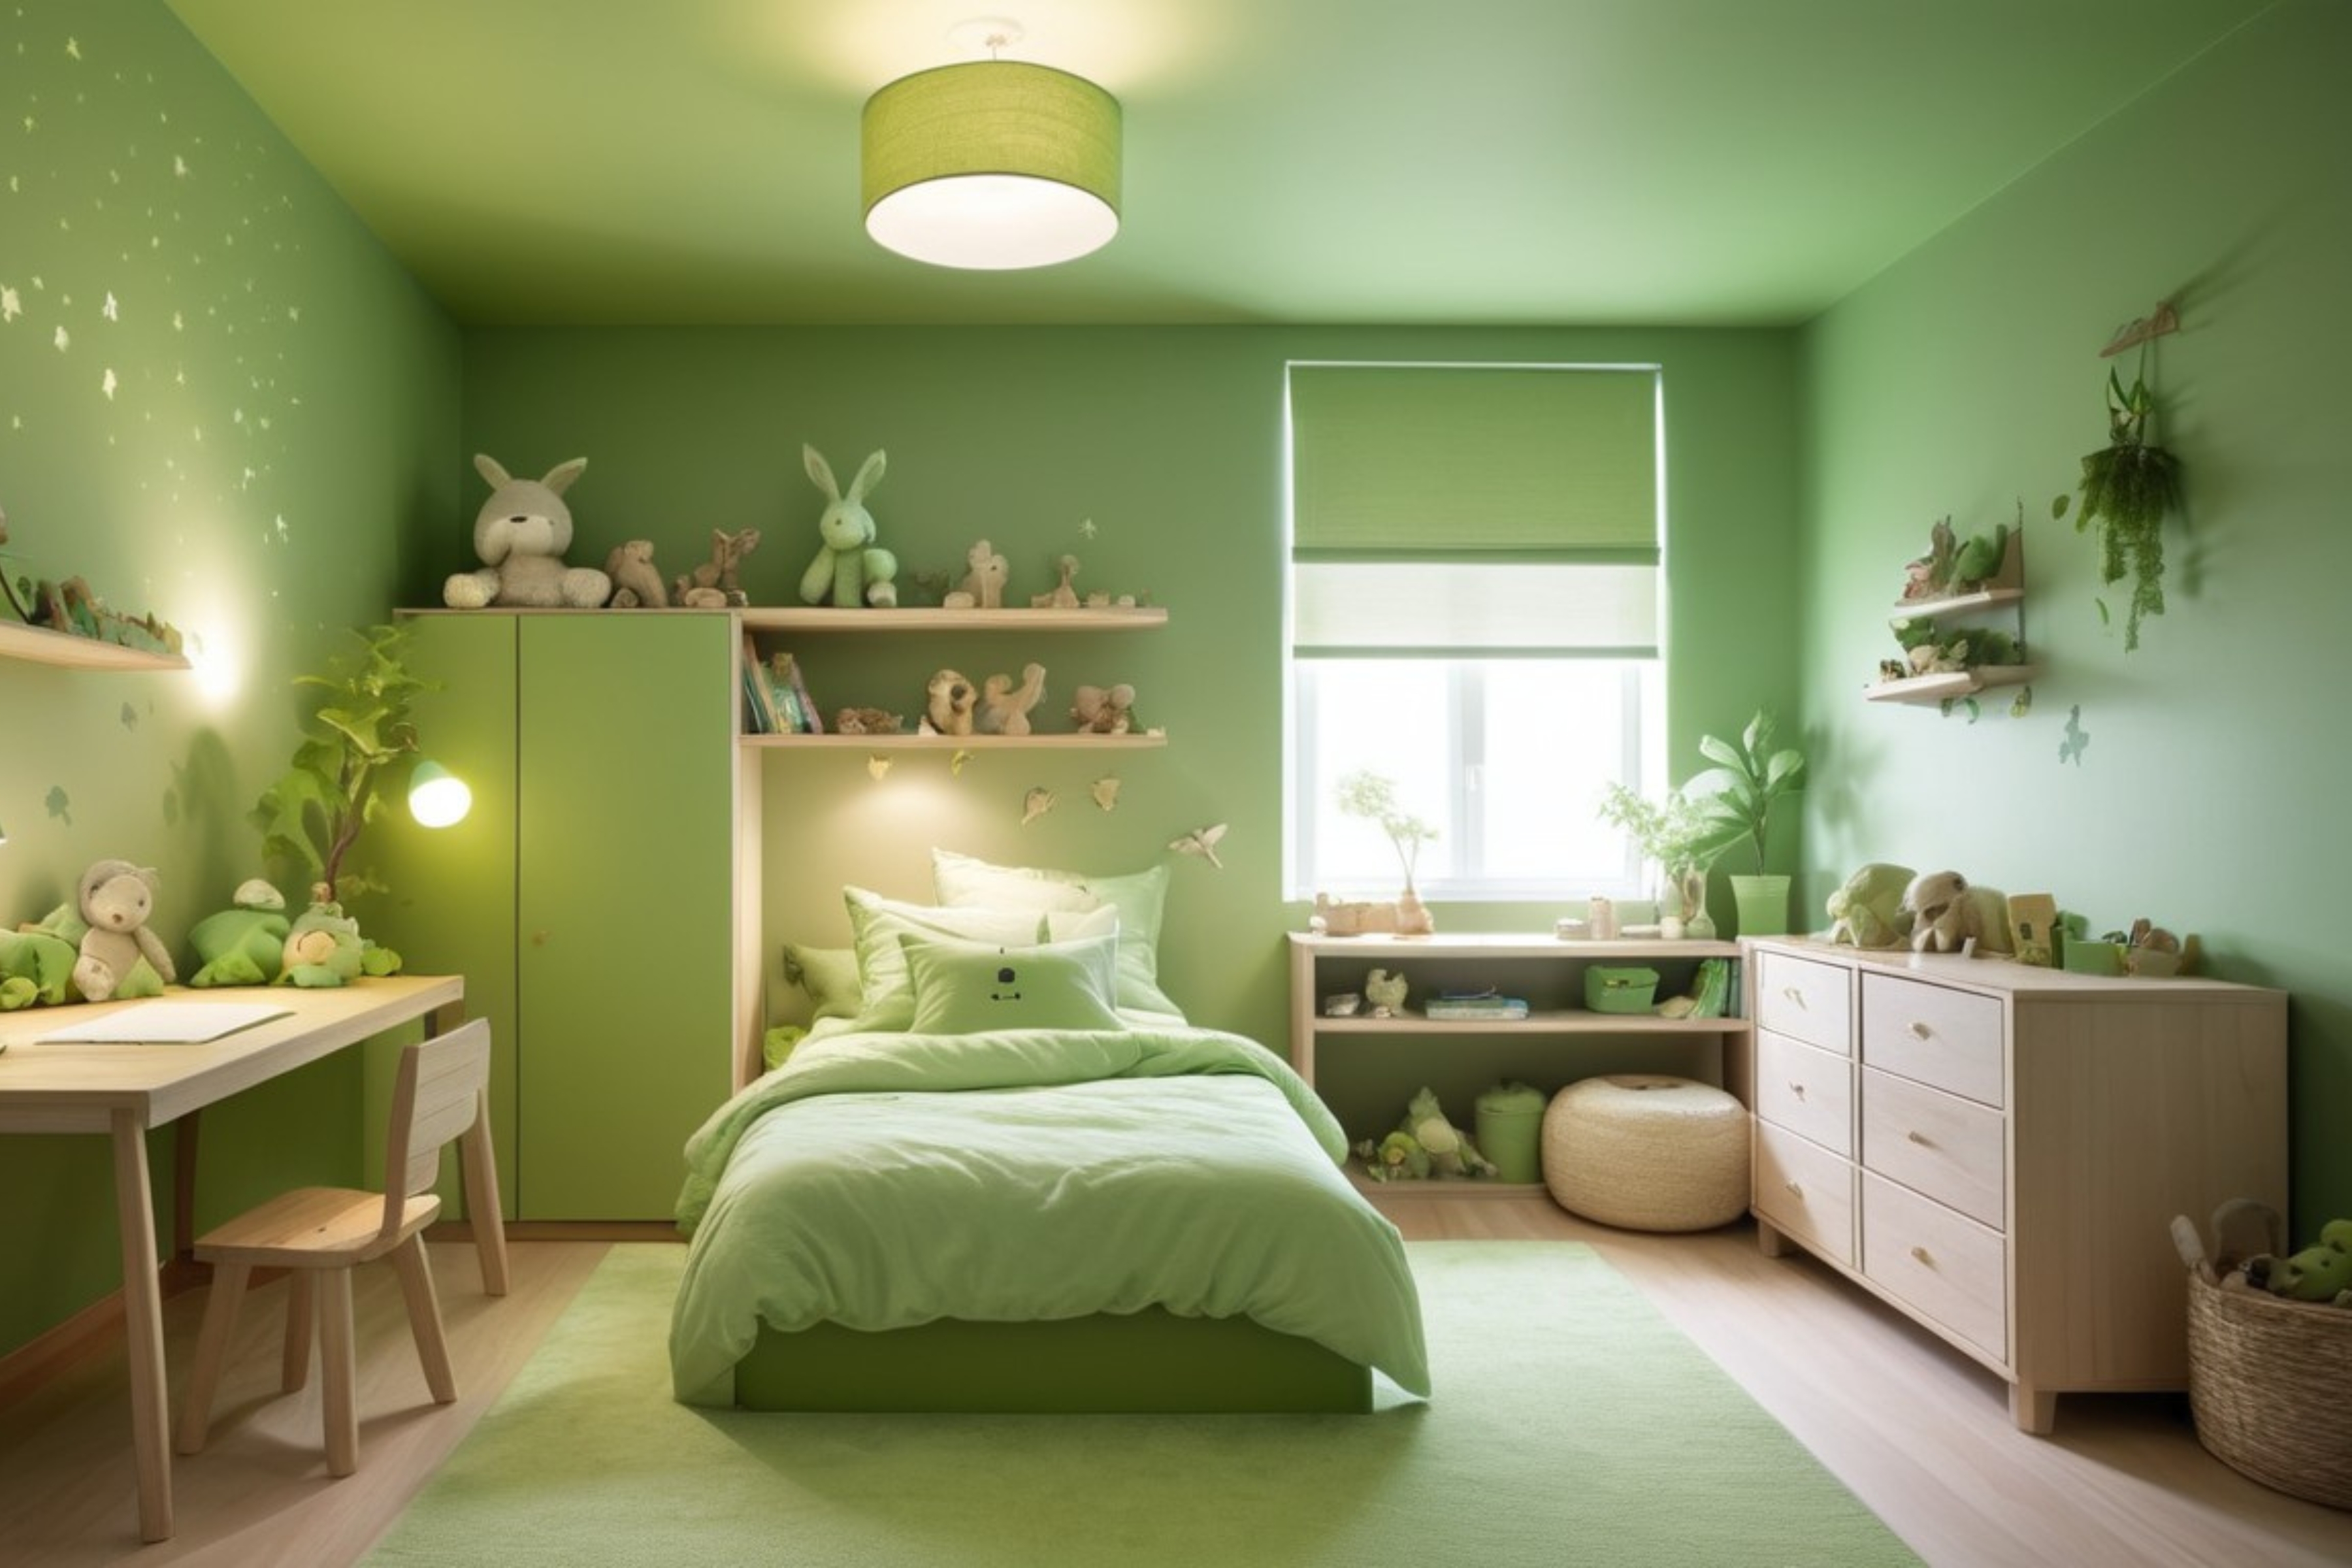 Nyugtató zöld színű gyerekszoba visszafogott világítással és természetes elemekkel, elősegítve a pihentető alvást és relaxációt.